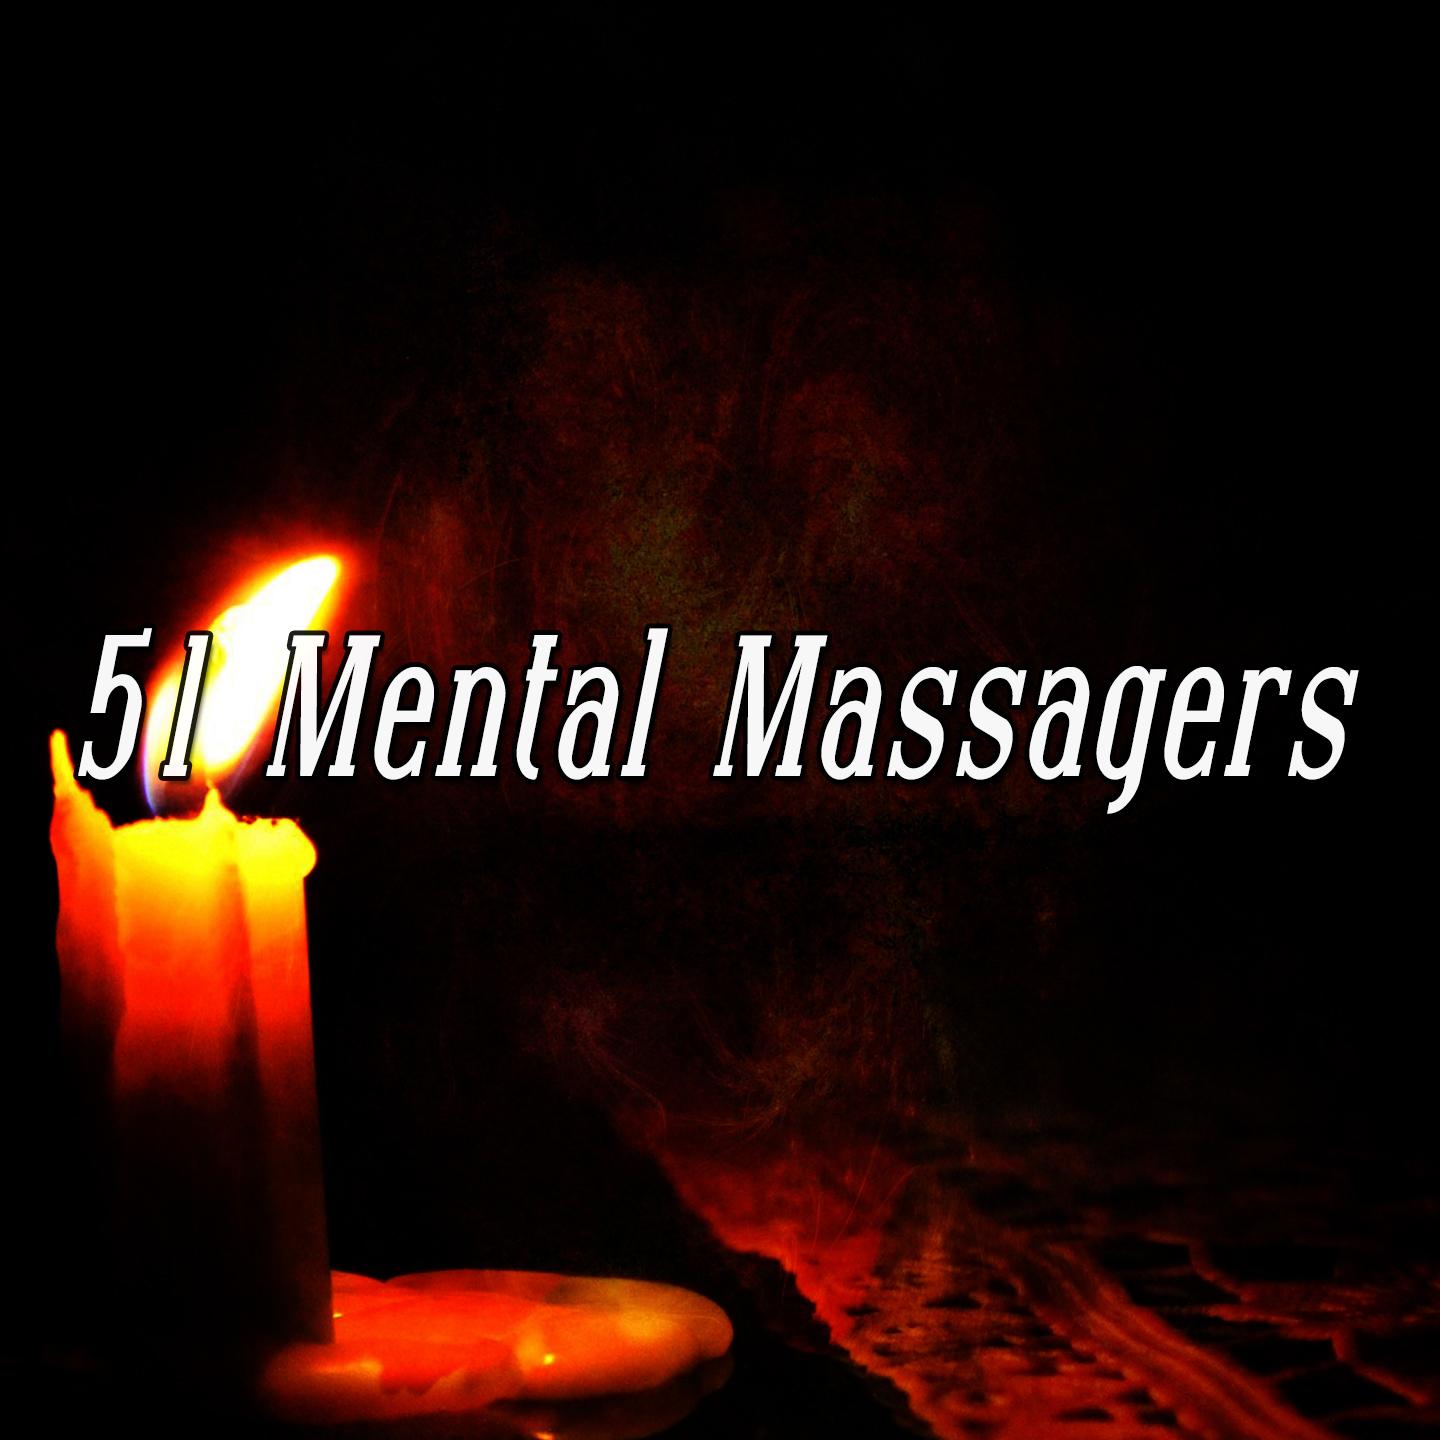 51 Mental Massagers